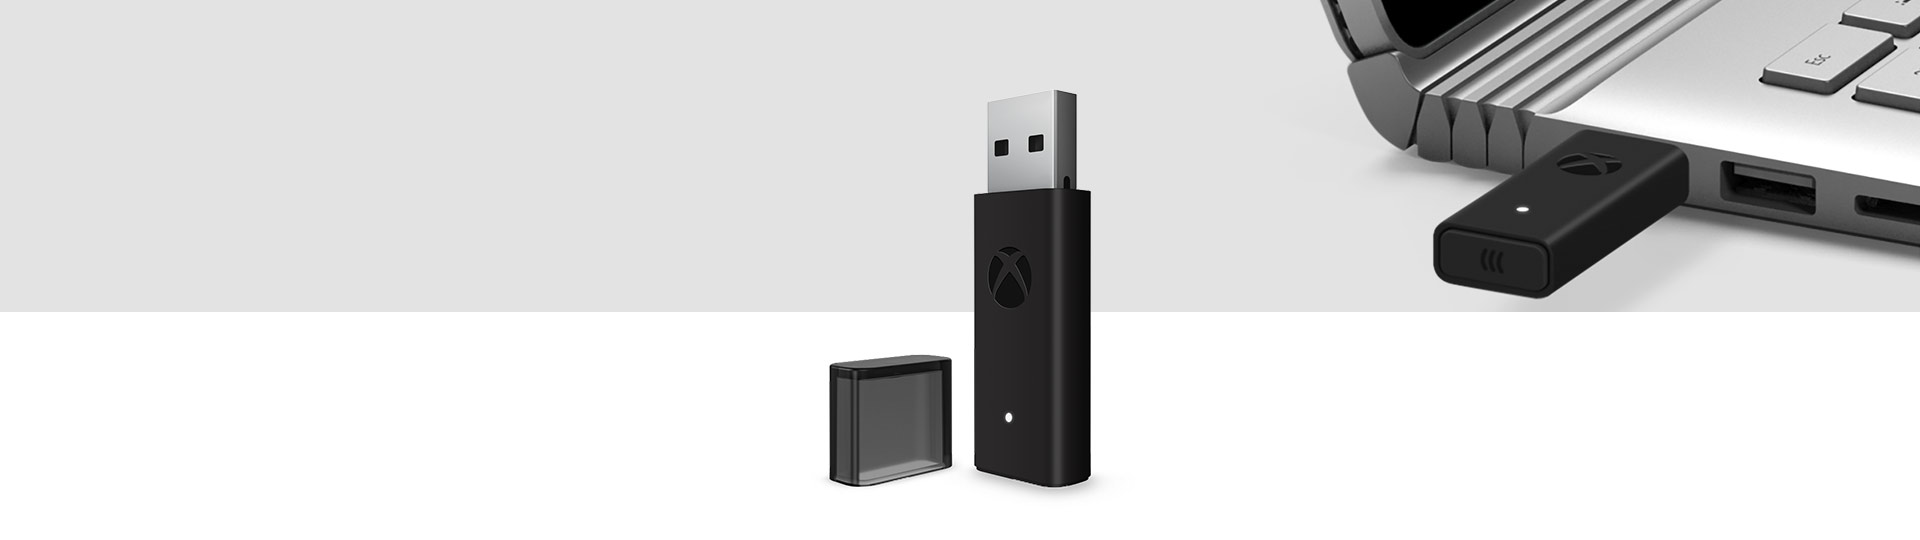 Adapter kontrolera bezprzewodowego Xbox do urządzeń z systemem Windows 10 z adapterem bezprzewodowym Xbox podłączonym do portu USB na laptopie w tle